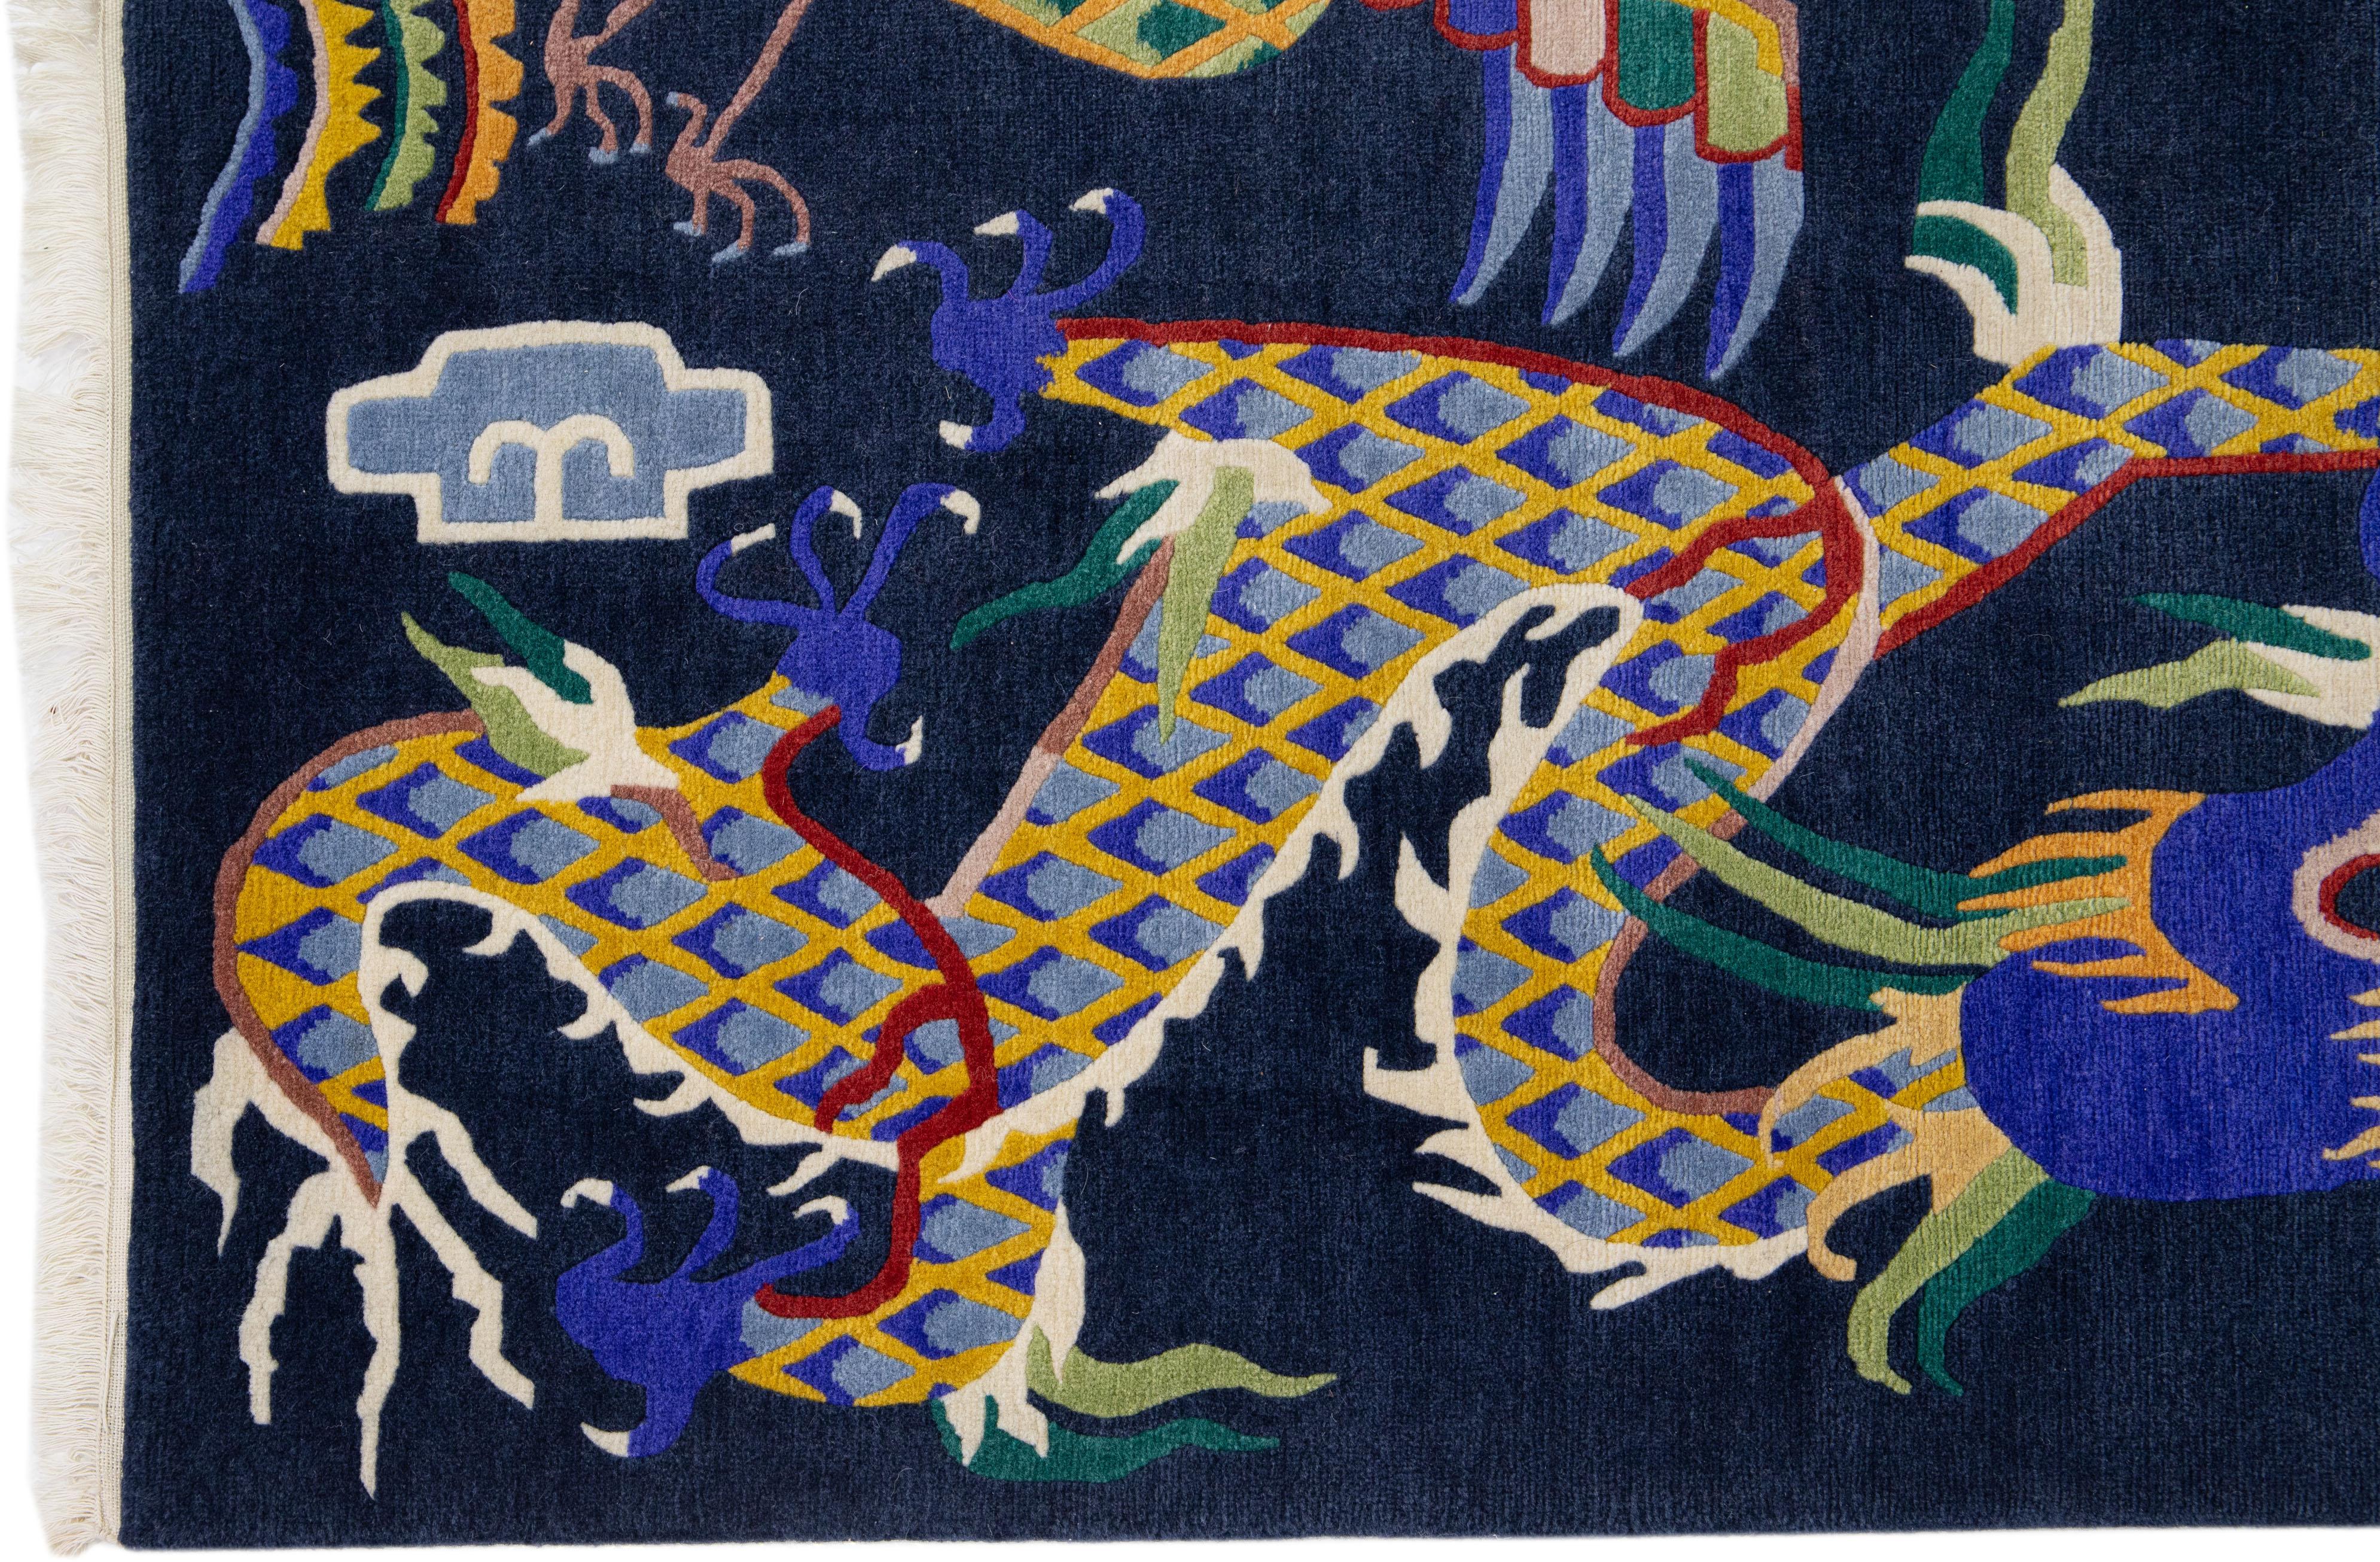 Magnifique tapis chinois ancien en laine nouée à la main, avec un champ bleu marine et des accents multicolores sur l'ensemble du motif traditionnel du dragon chinois. 

Ce tapis mesure 3'1